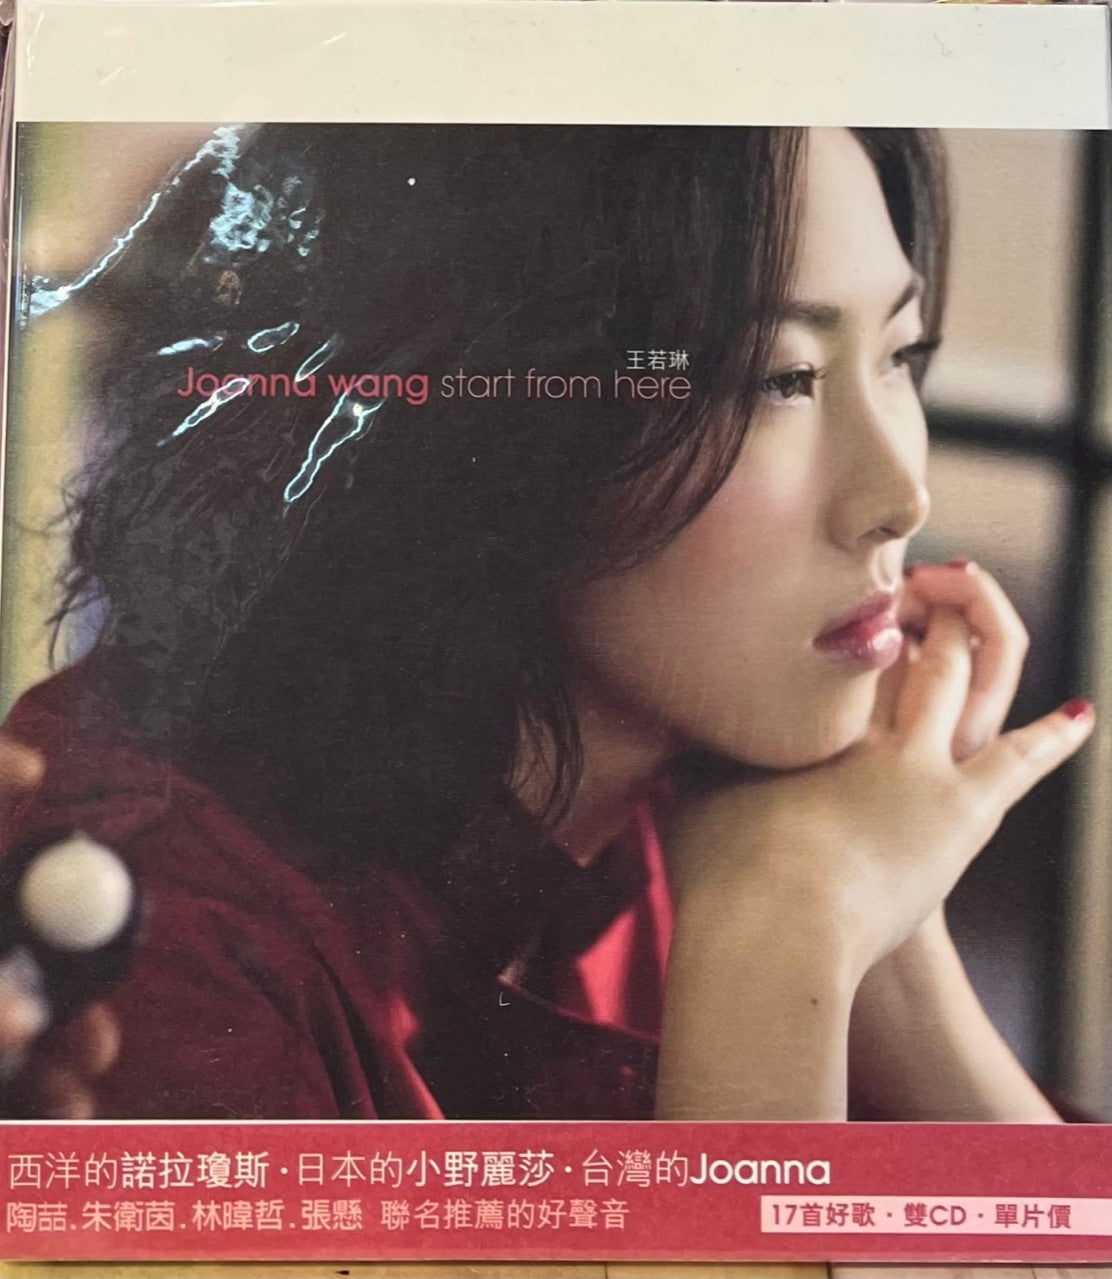 JOANNA WANG - 王若琳 START FROM HERE (2CD)